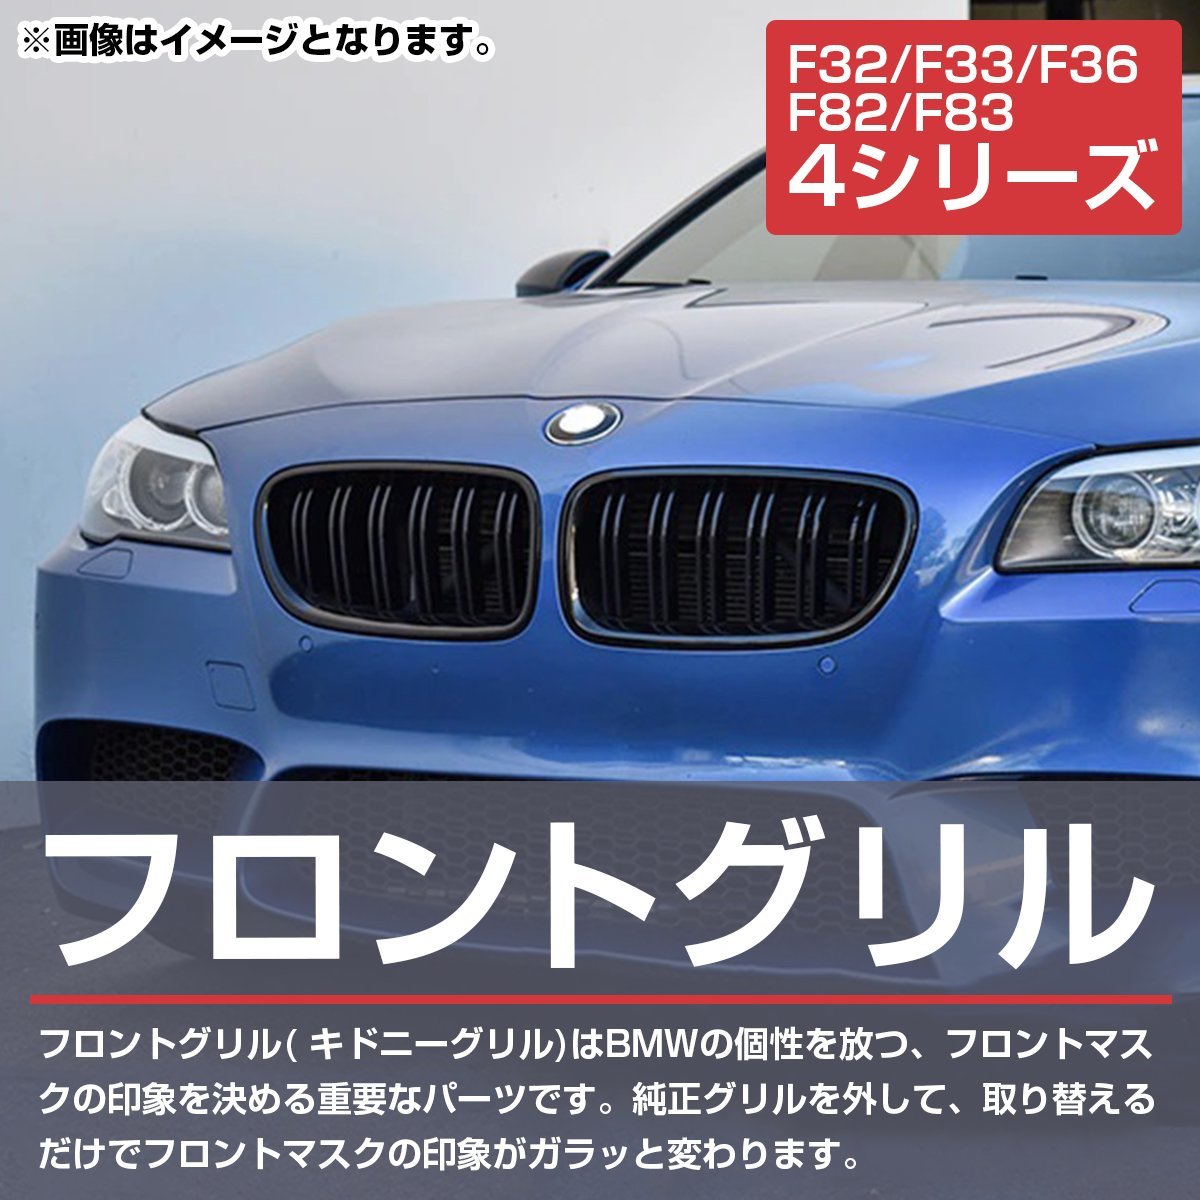 【新品即納】 BMW 4シリーズ F32 F33 F36 F80 F82 2013-2018年 Mスポーツ M3 M4 ルック キドニー ダブルフィン グリル ブラック 艶あり黒_grl-033-s